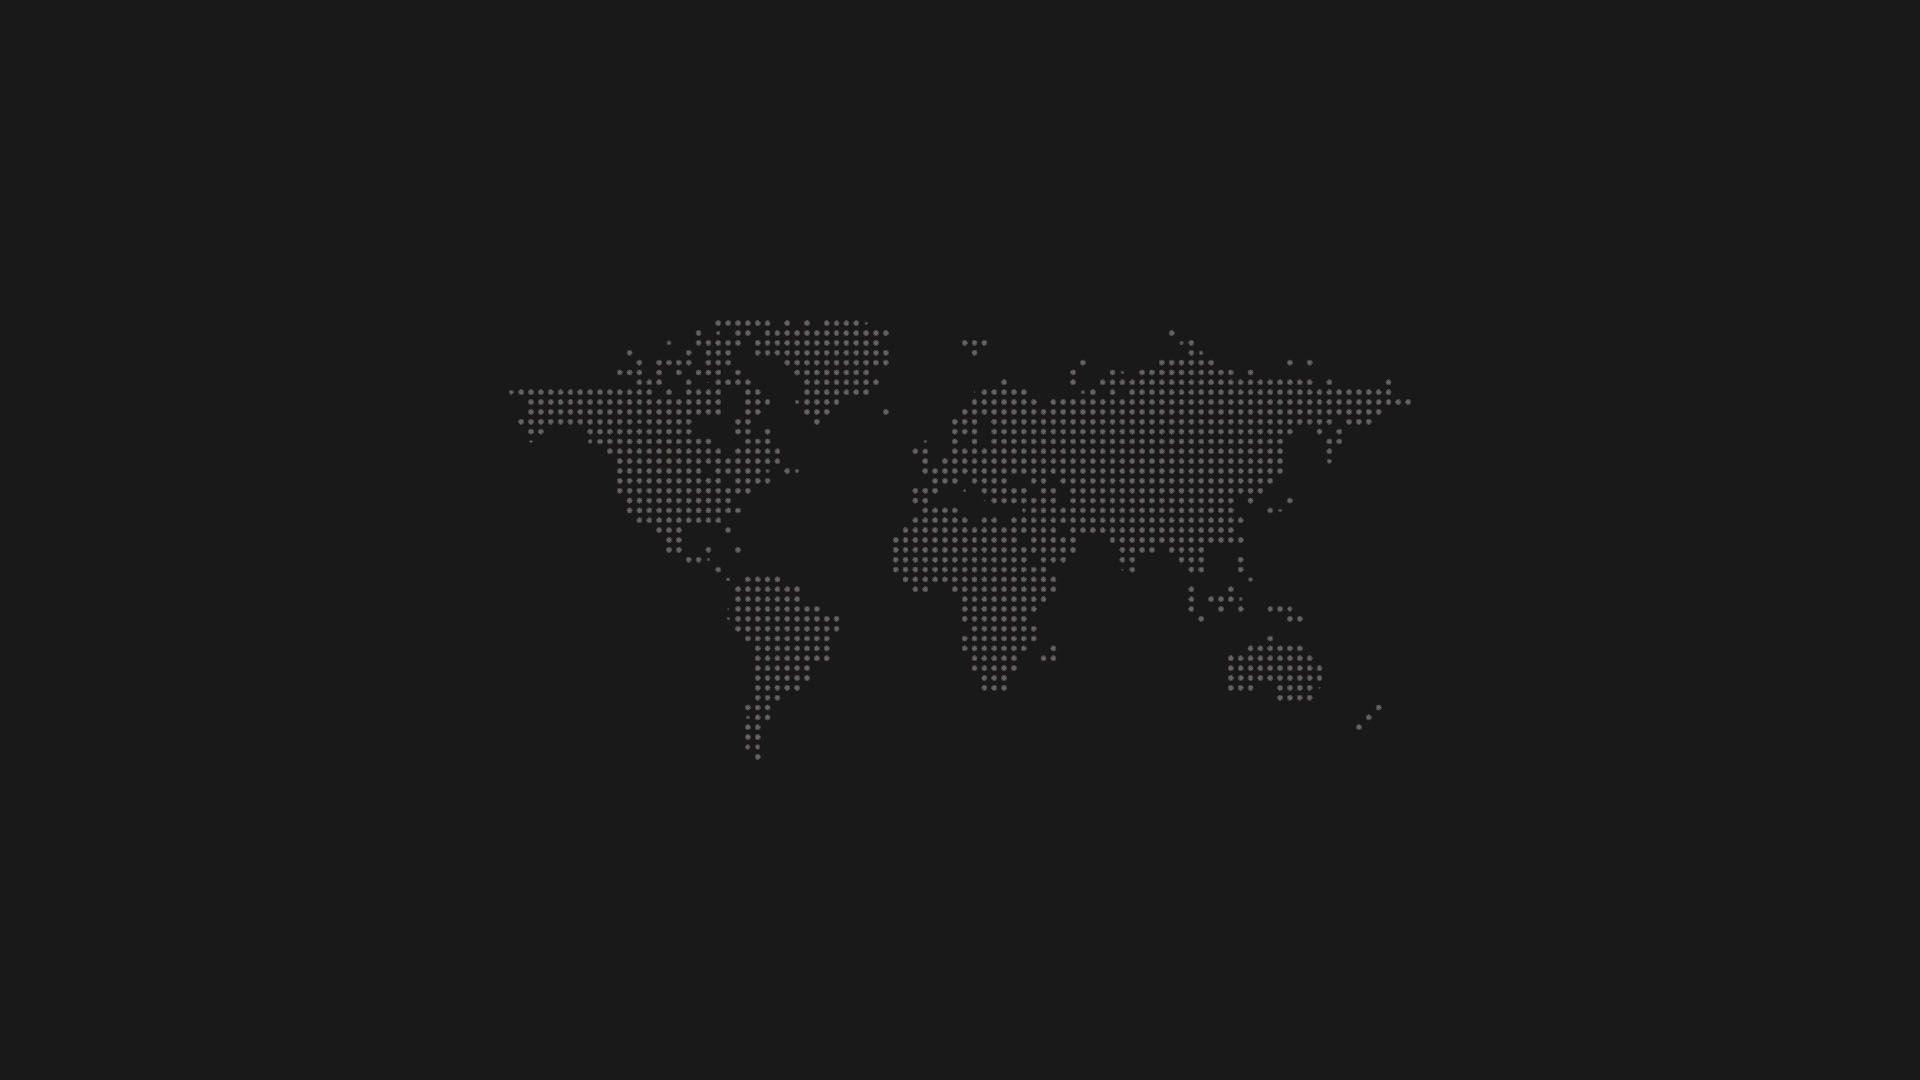 World Map. Full HD Widescreen wallpaper for desktop